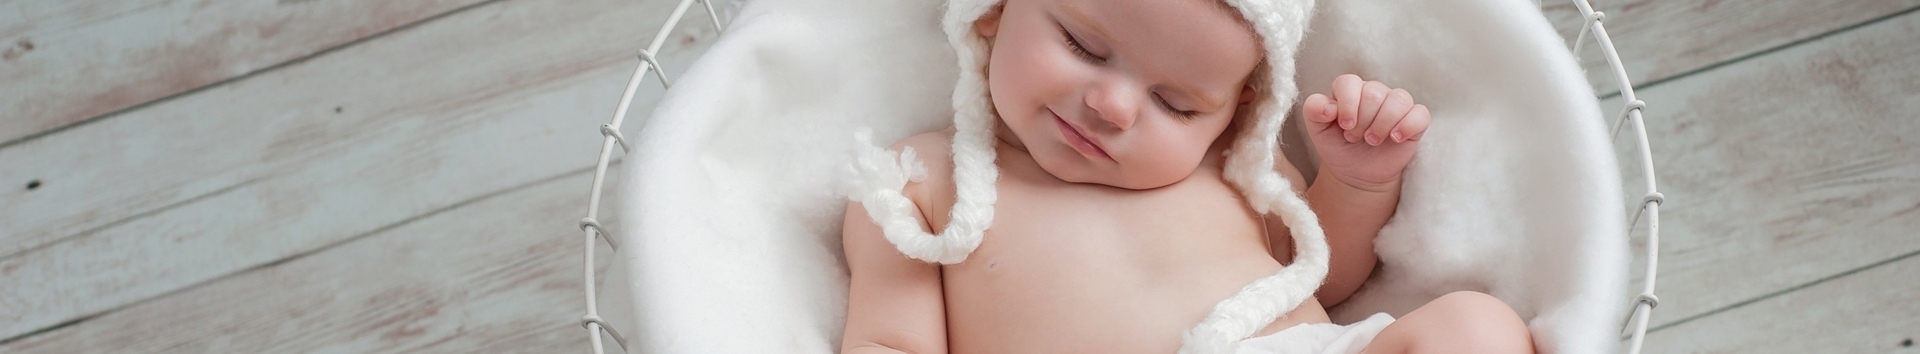 Picadas de insetos em bebês: O que fazer para prevenir e tratar?